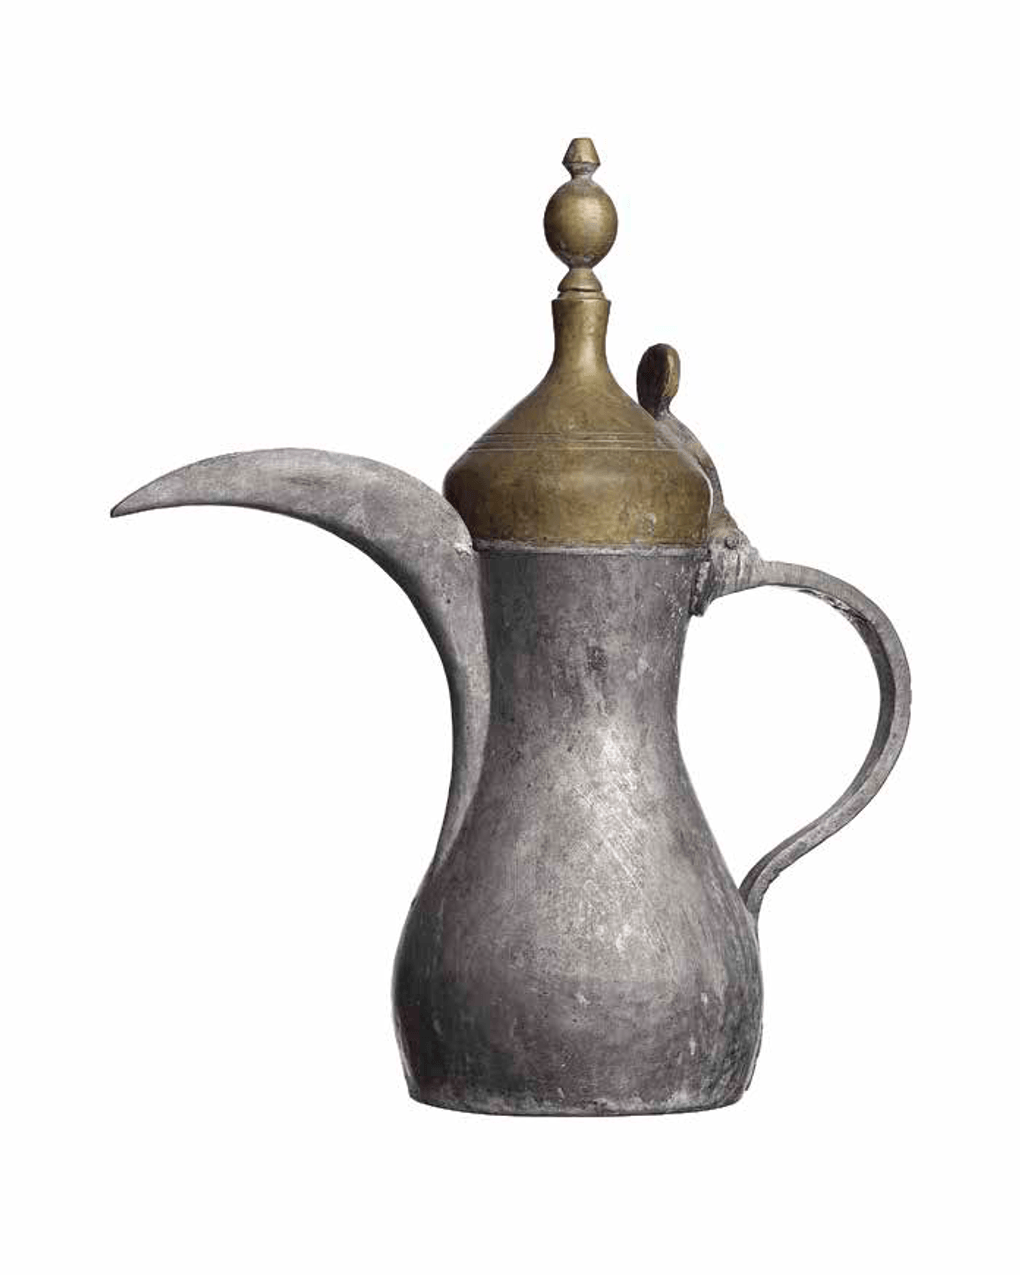 Кофейник. XX век. Фотография предоставлена Музеем шейха Фейсала, Катар